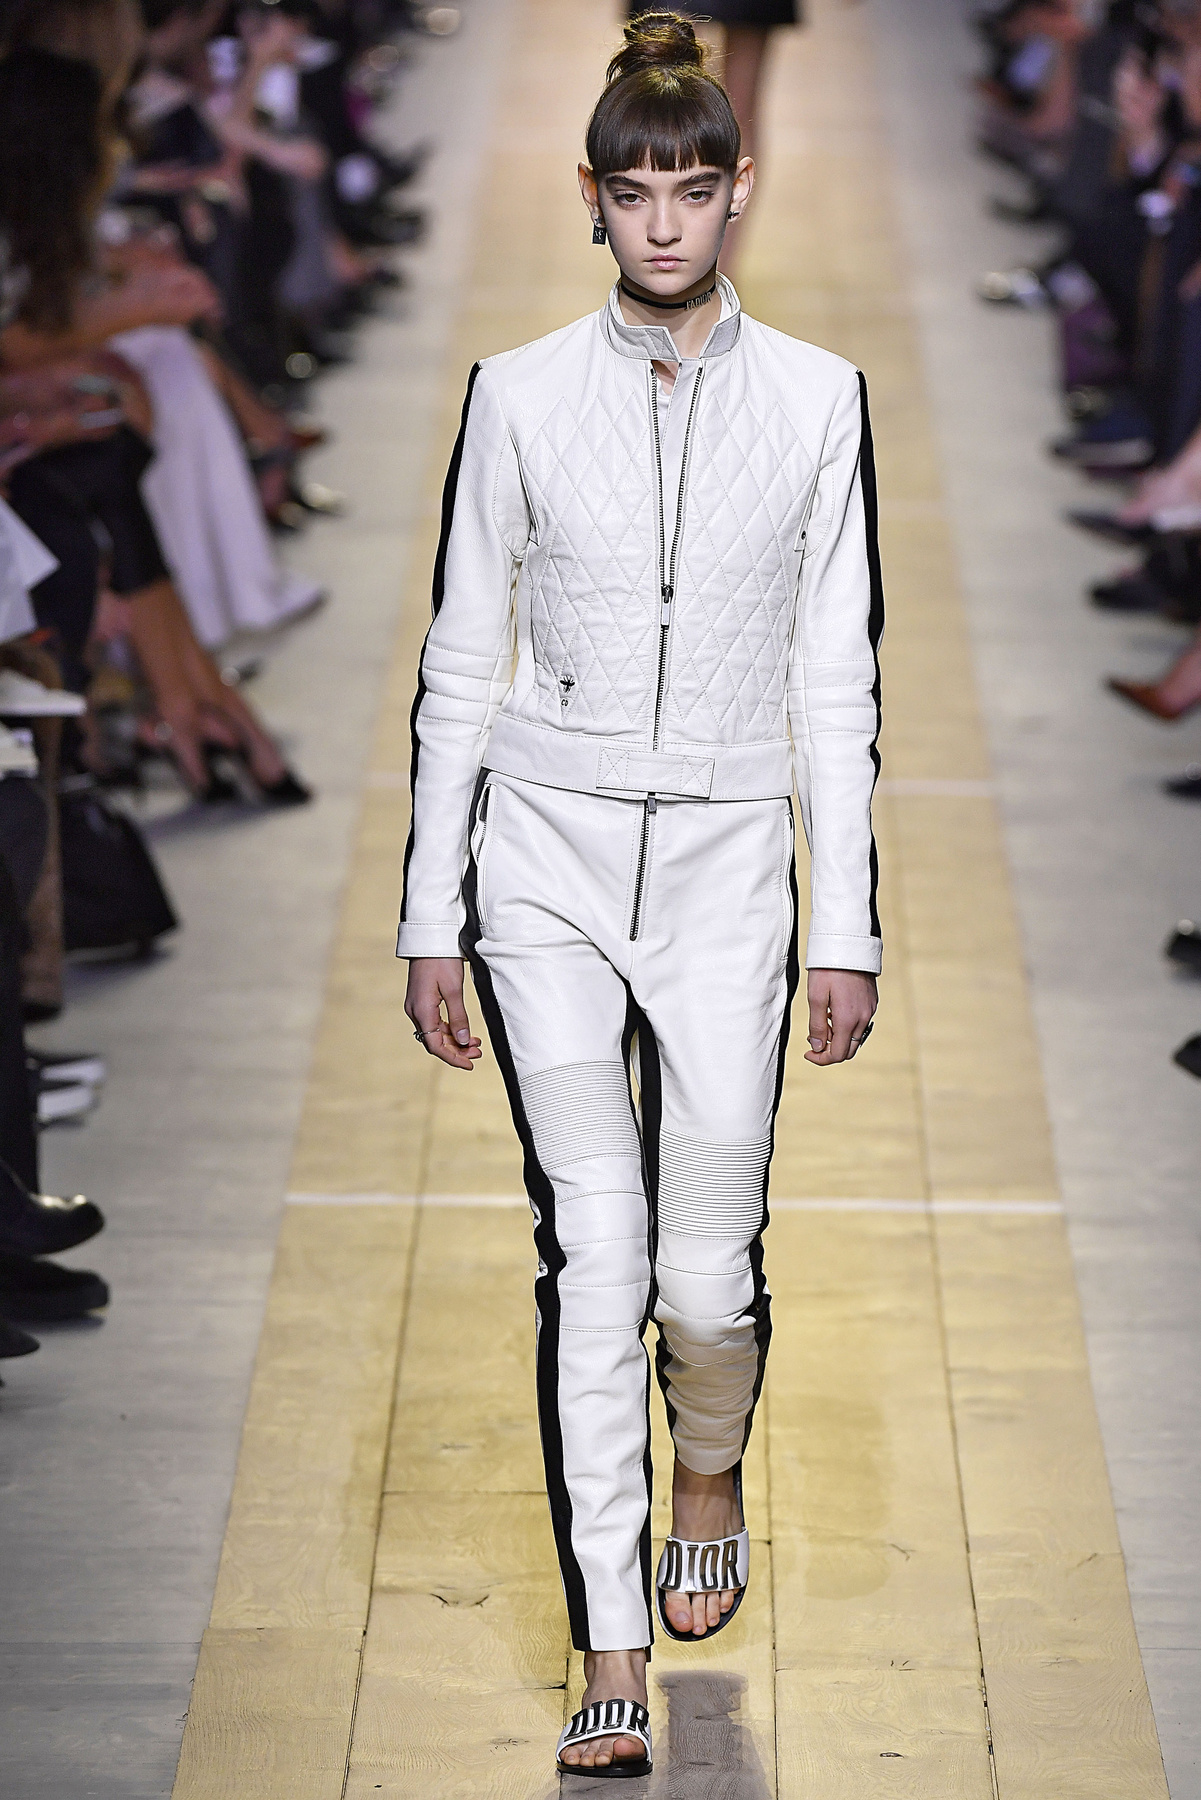 Ez az ezüstruha az egyik kedvencünk a Louis Vuitton kollekcióból.